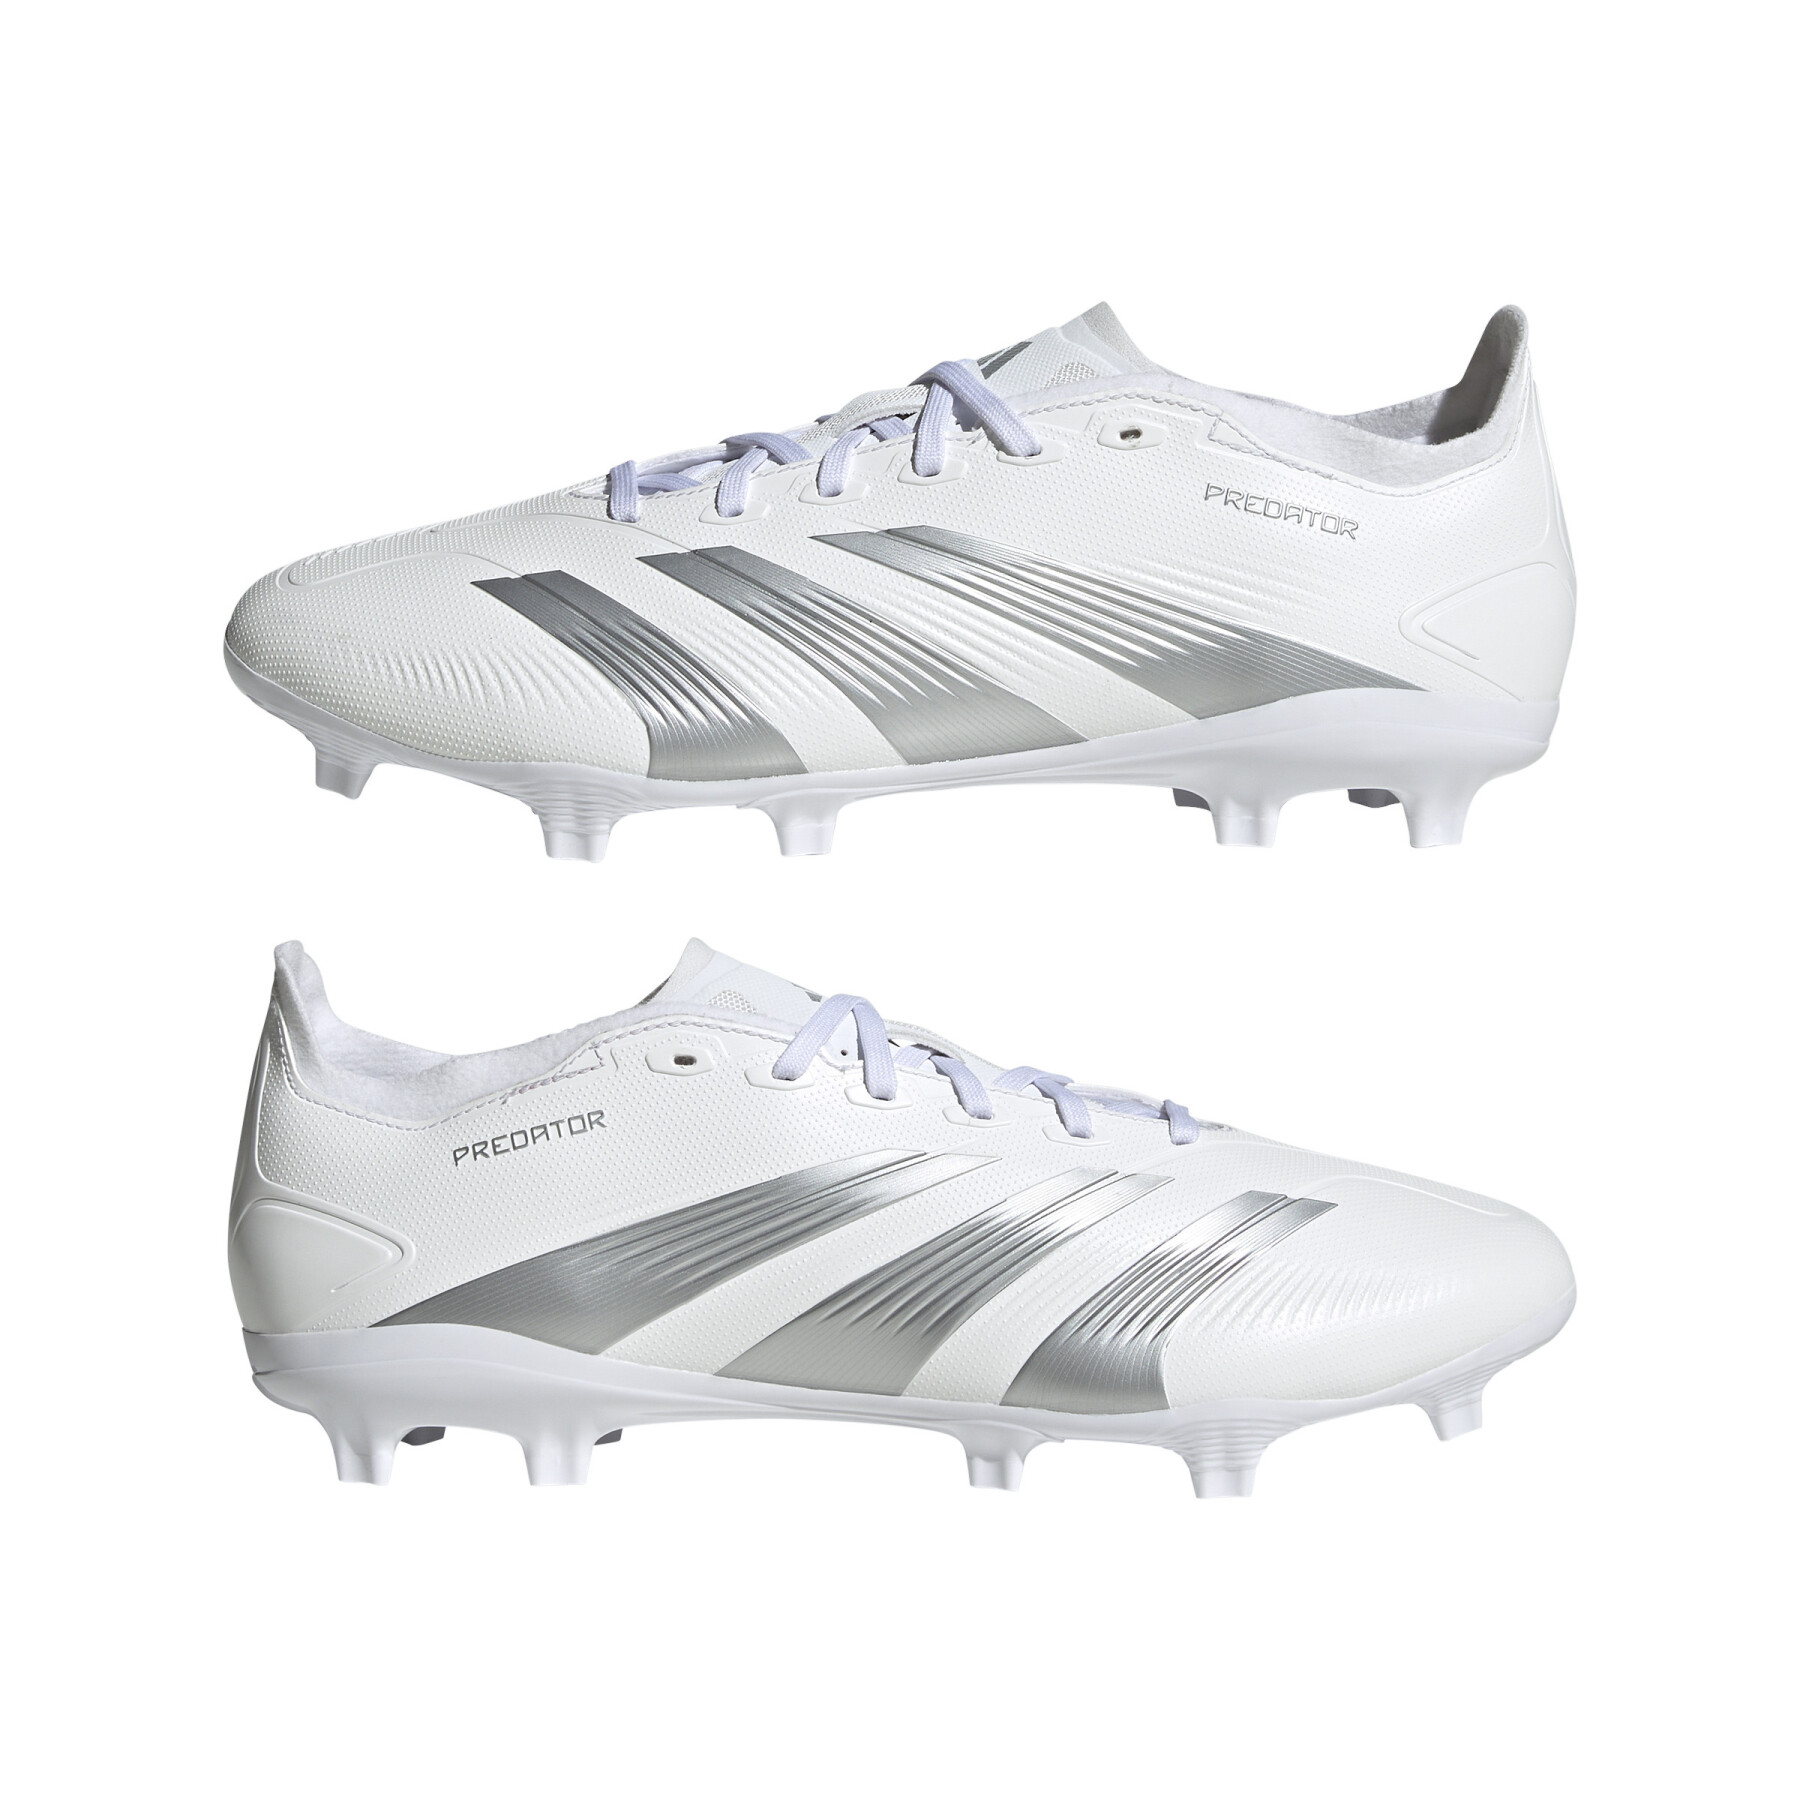 Soccer shoes adidas Predator League FG